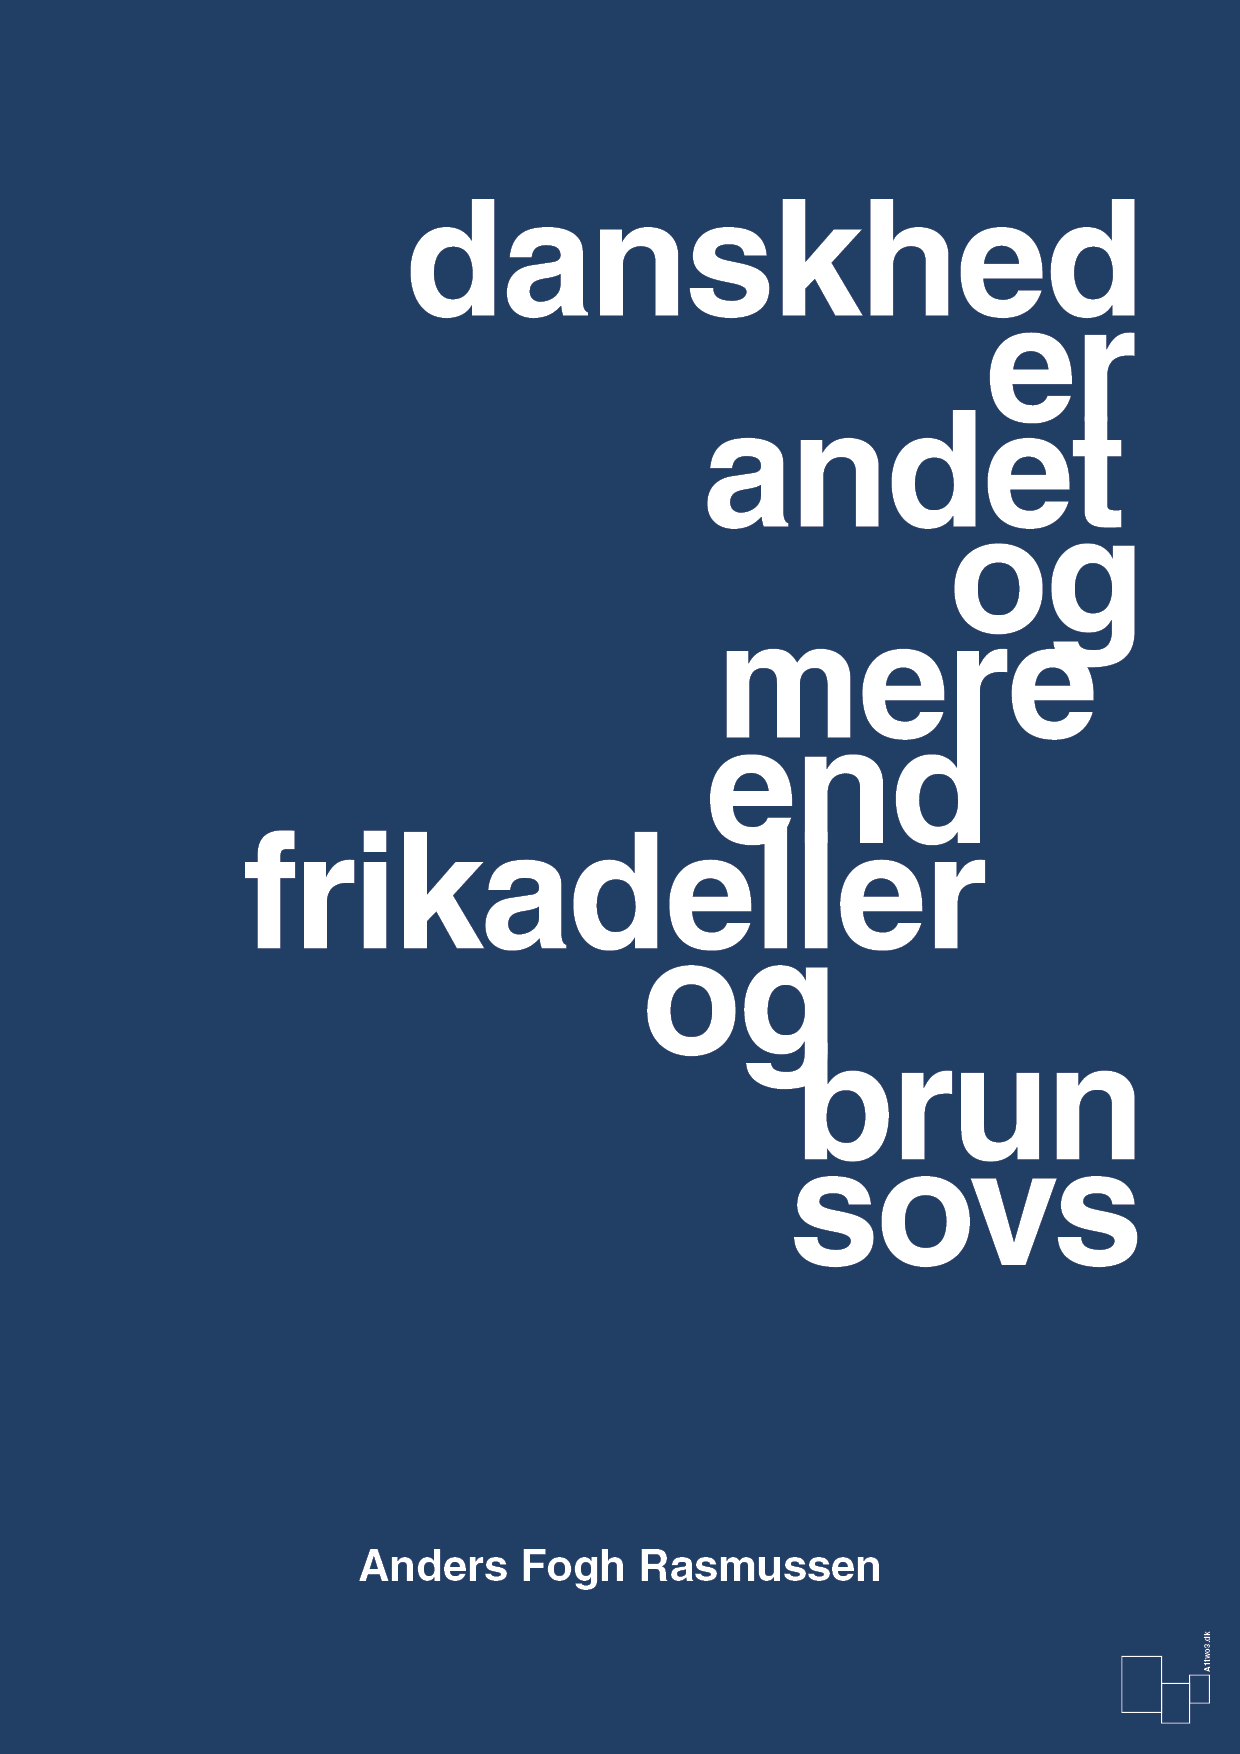 danskhed er andet og mere end frikadeller og brun sovs - Plakat med Citater i Lapis Blue